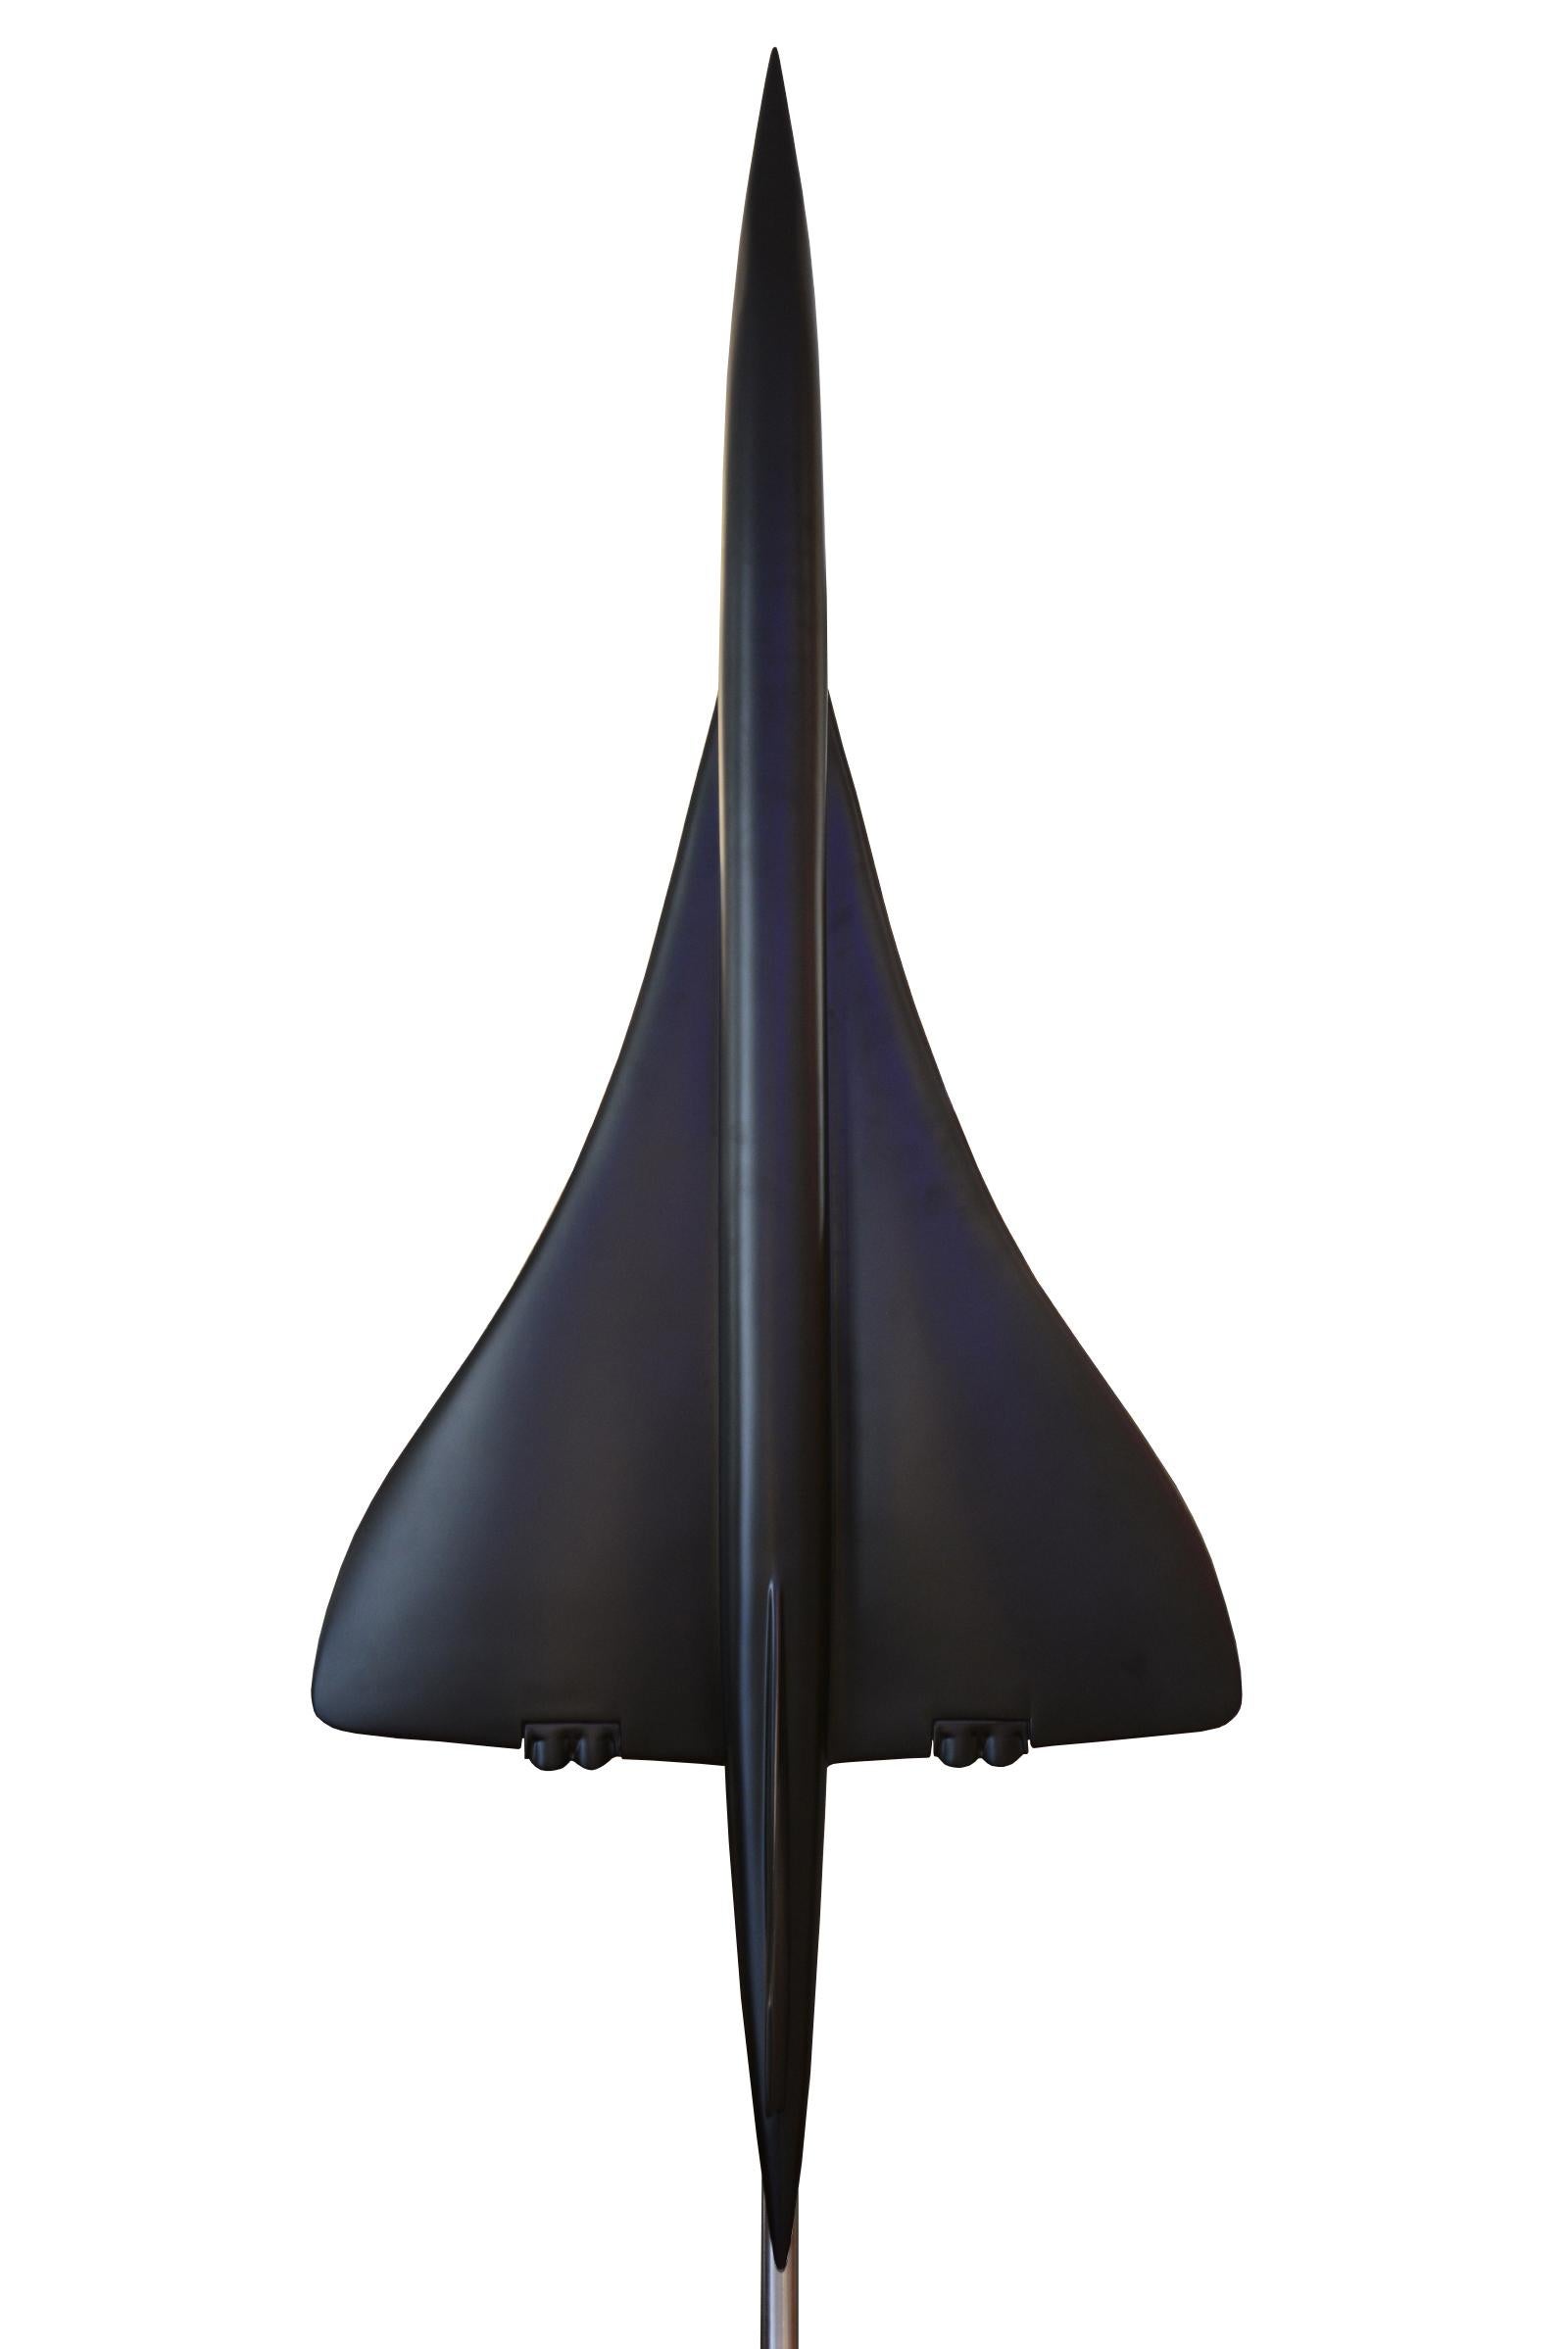 Skulptur Concorde Modell schwarz in Fiberglas
in mattschwarzer Ausführung. Maßstab 1/36em auf poliert
Sockel aus gebürstetem Aluminium. Ein außergewöhnliches und einzigartiges Stück.
